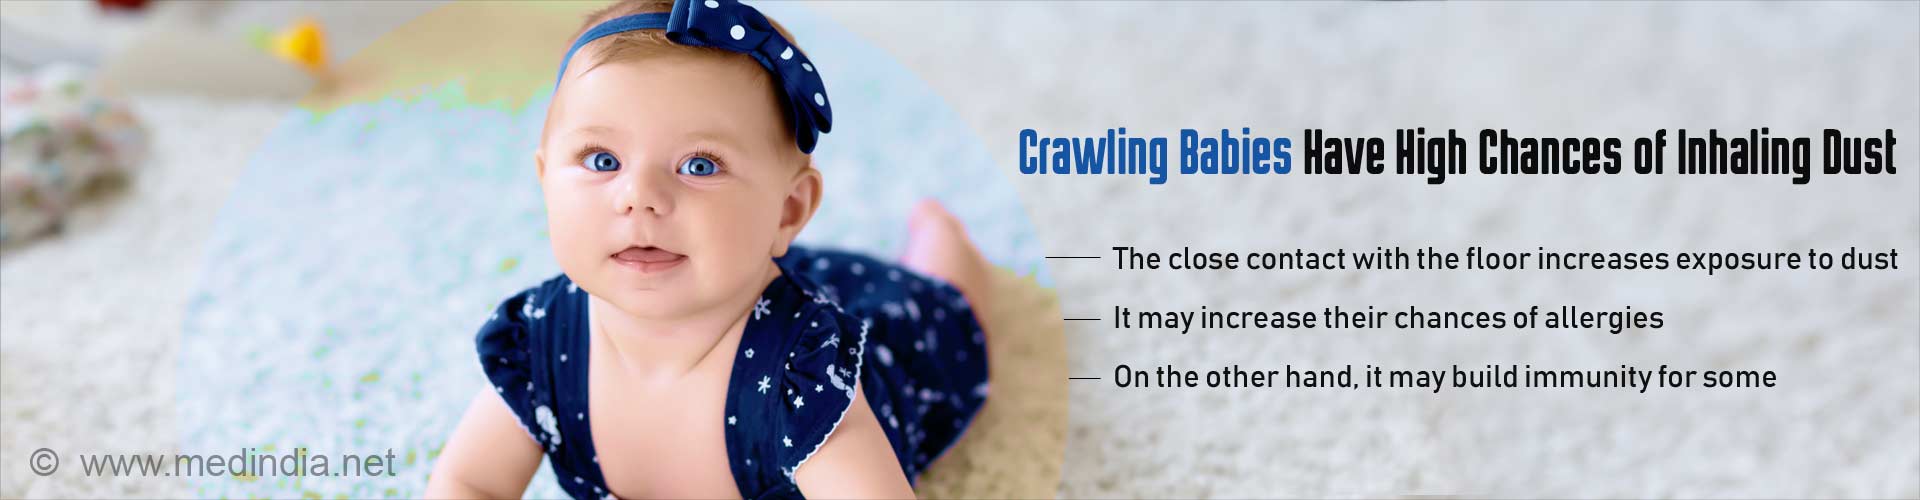 爬行的婴儿有很高的机会吸入灰尘——与地板的密切接触增加了接触灰尘的机会——这可能会增加他们过敏的机会——另一方面，这可能会增强一些人的免疫力